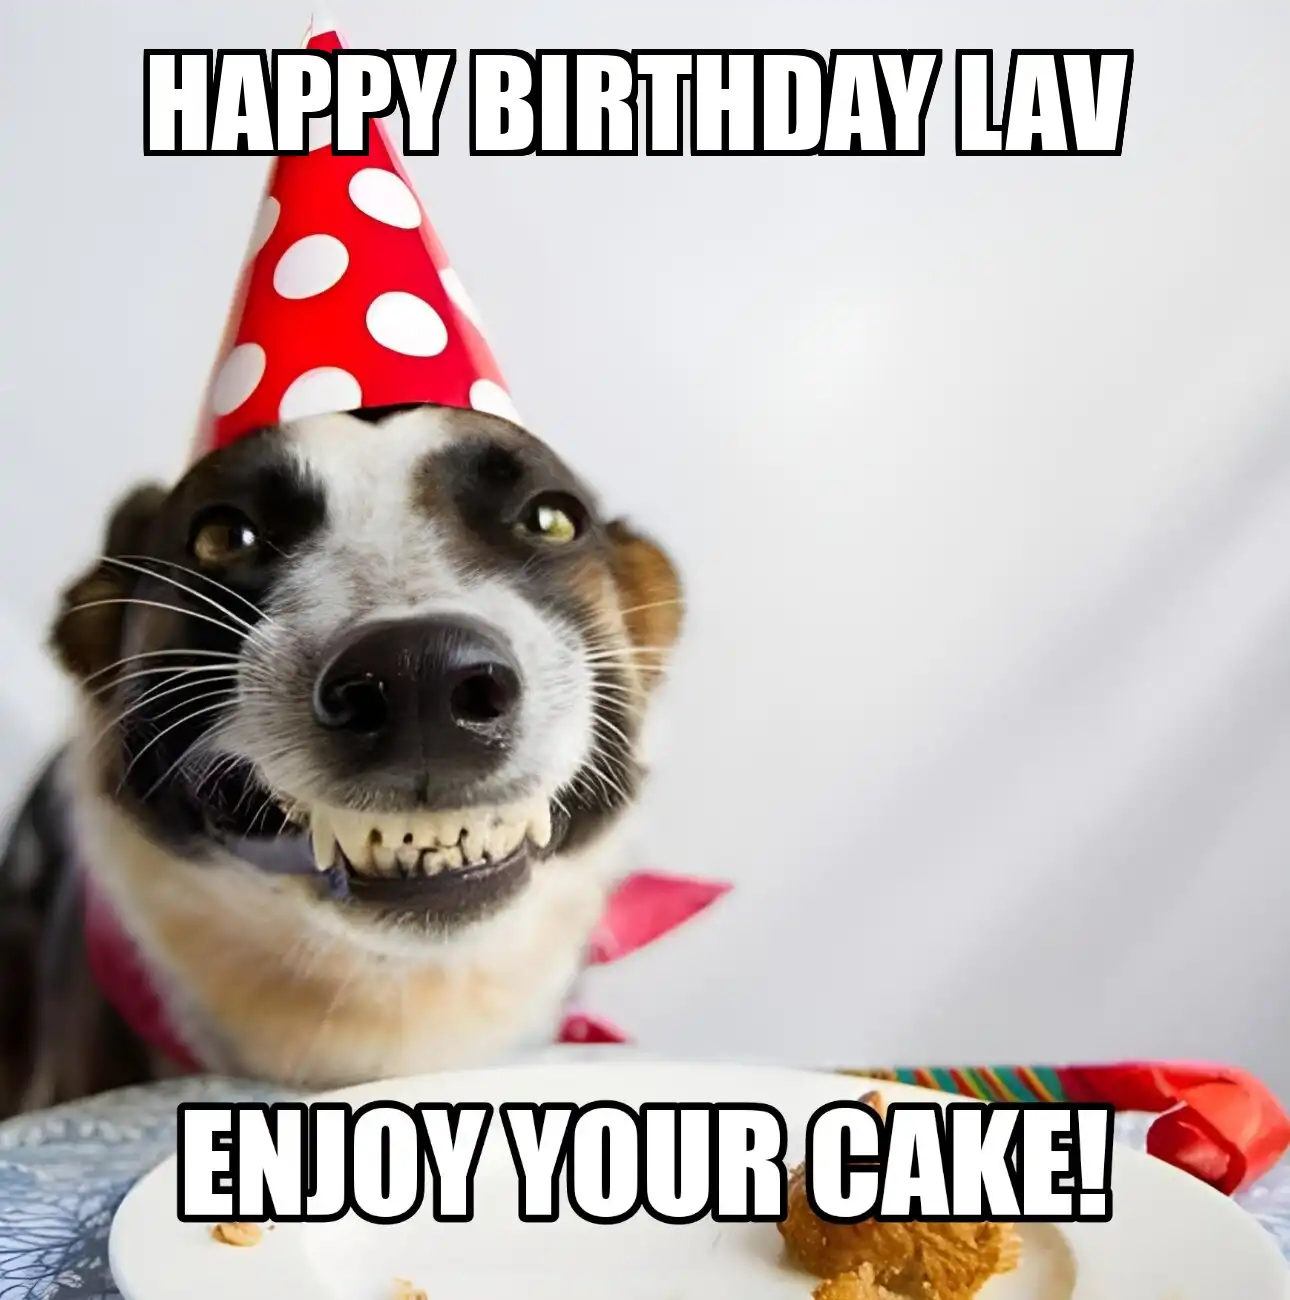 Happy Birthday Lav Enjoy Your Cake Dog Meme